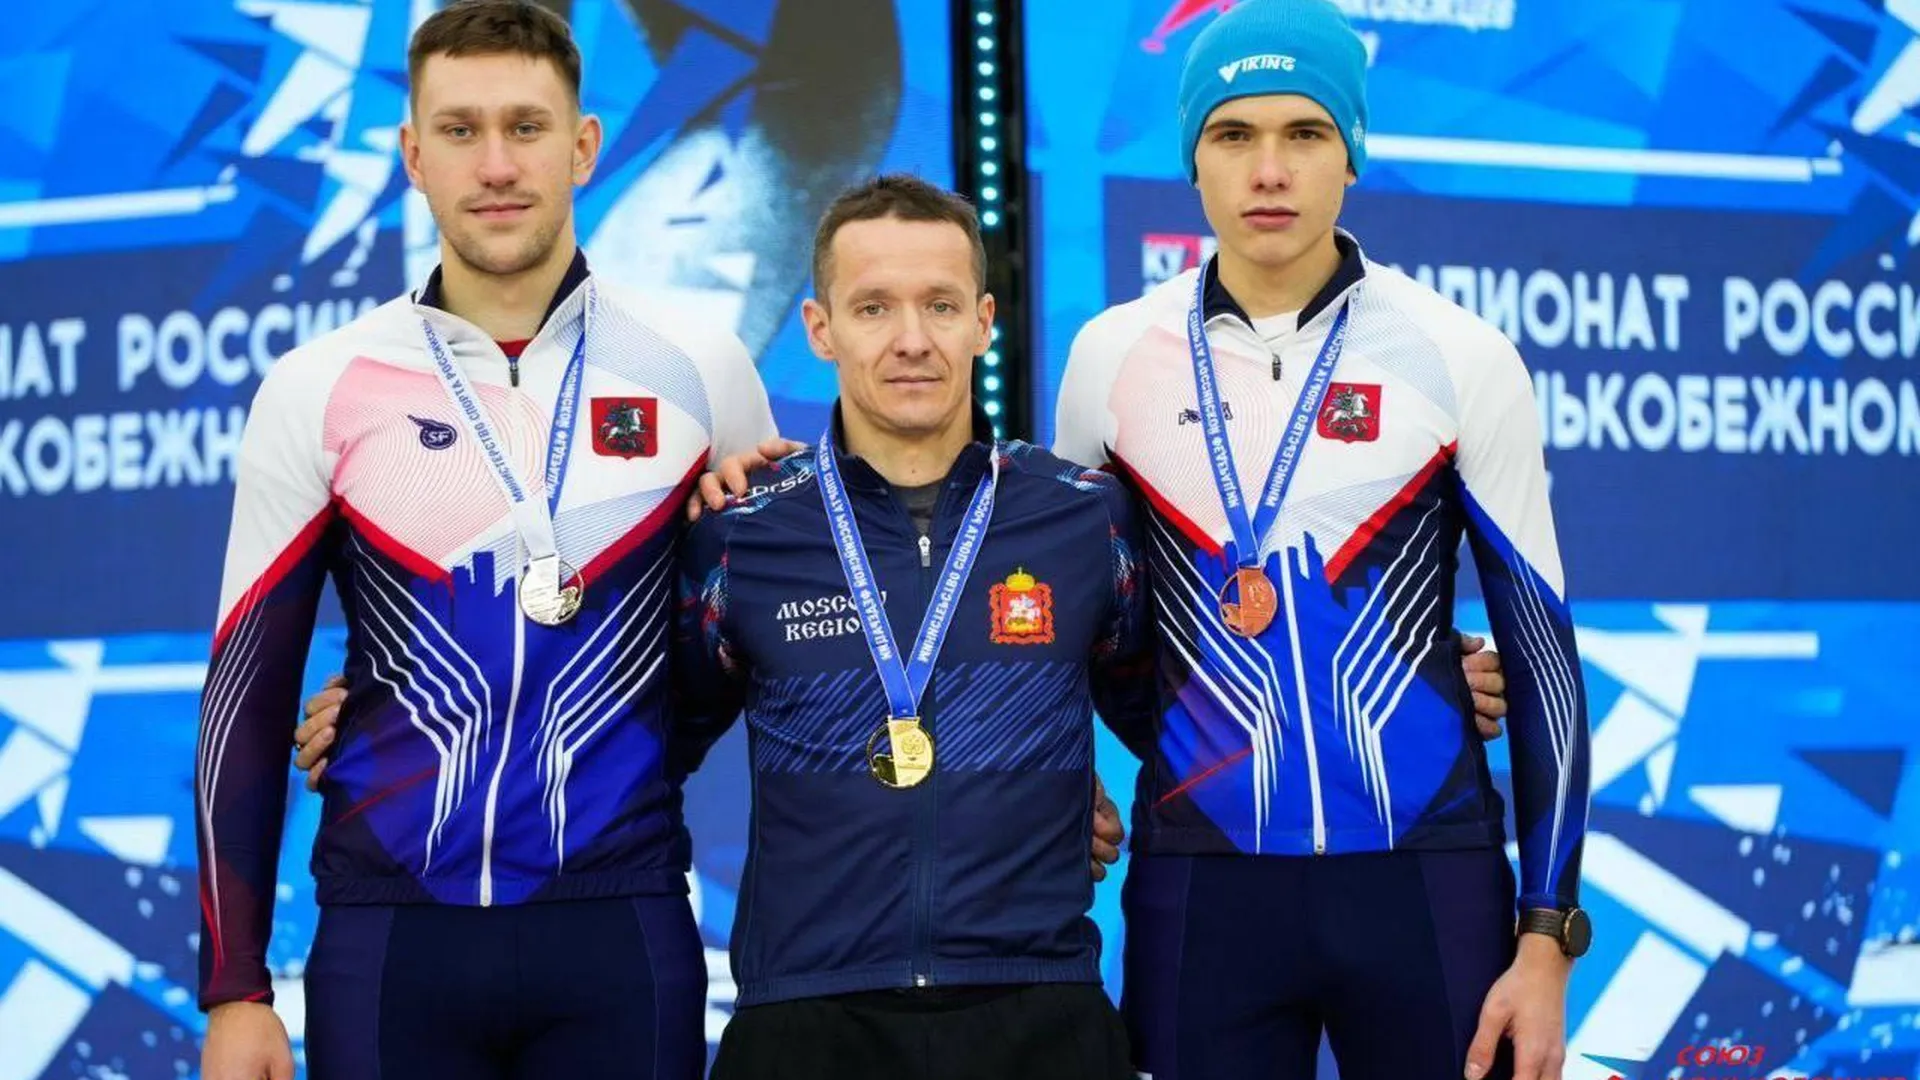 Спортсмены из Подмосковья завоевали три медали на чемпионате России по конькобежному спорту